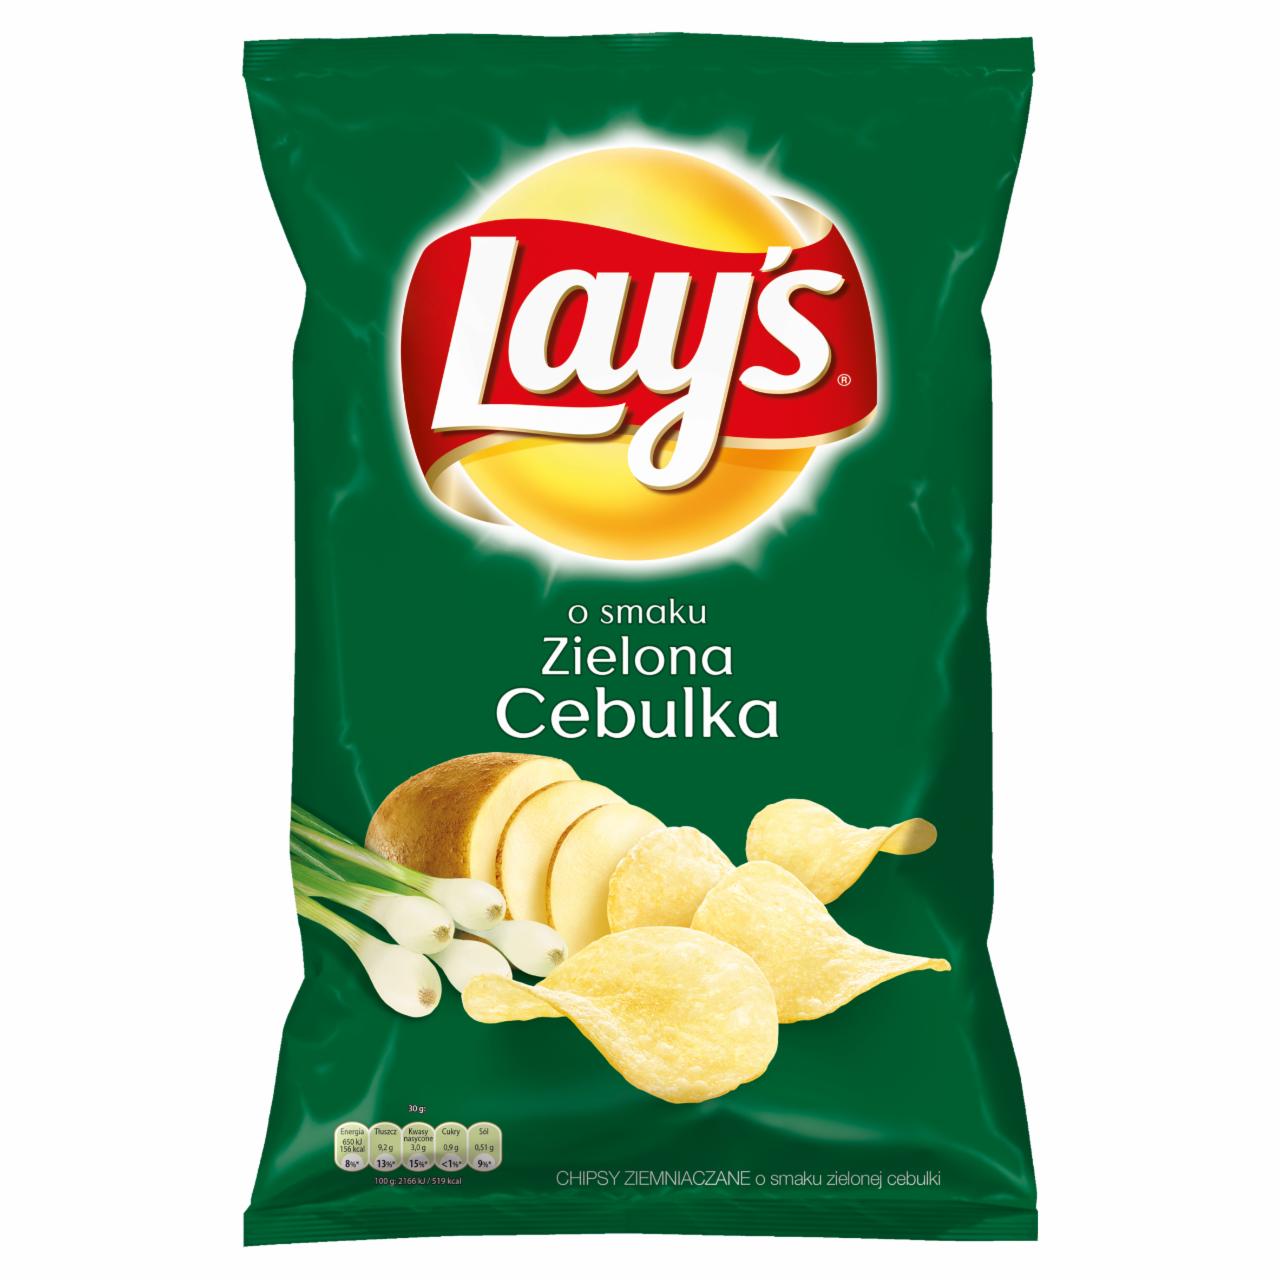 Zdjęcia - Lay's o smaku Zielona cebulka Chipsy ziemniaczane 140 g